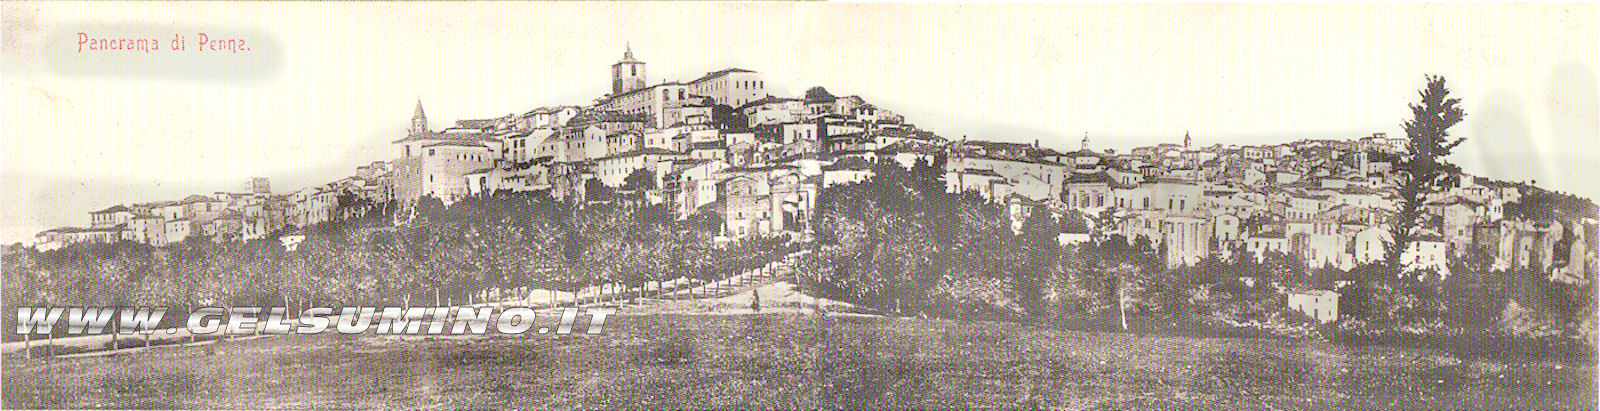 Piano di San Francesco nel 1904